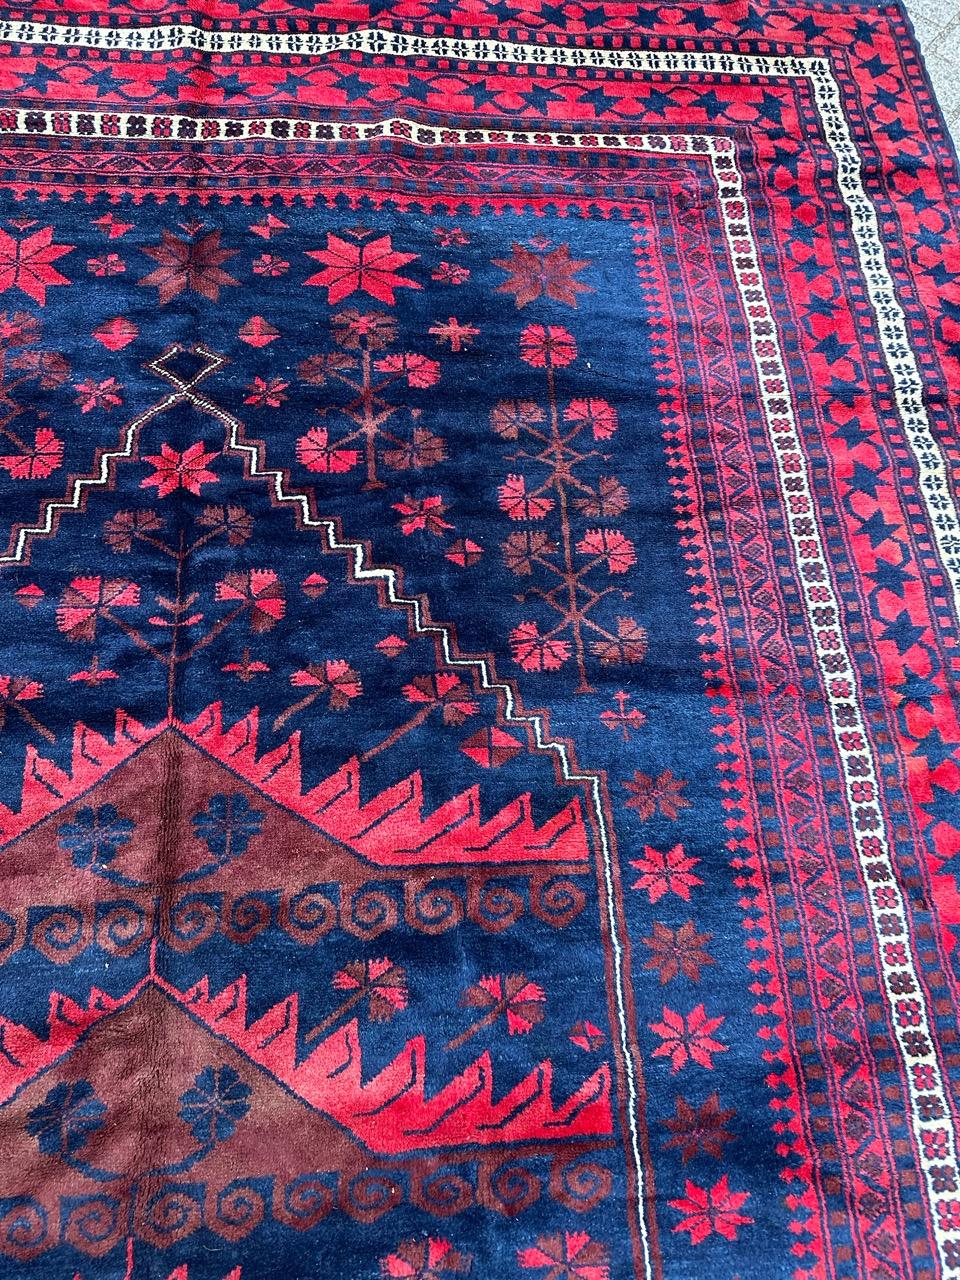 Wunderschöne große Vintage türkischen anatolischen Teppich mit schönen geometrischen Design und schönen Farben mit einem blauen Marine weiß und rot, ganz Hand mit Wolle auf Wolle Fundament geknüpft 

✨✨✨
